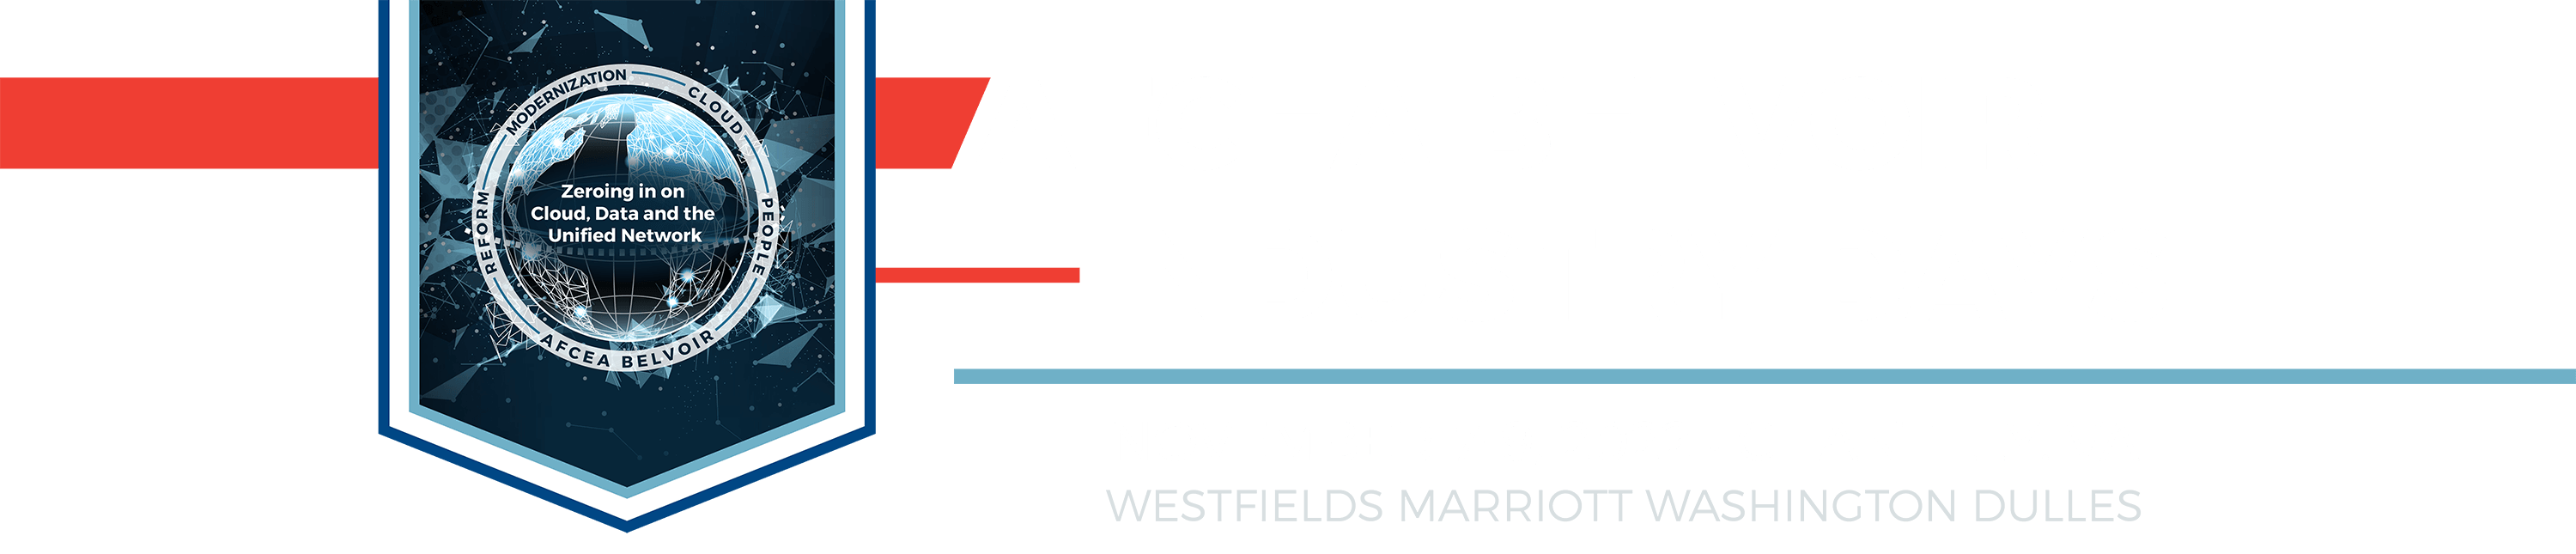 AFCEA Belvoir Industry Days 2021